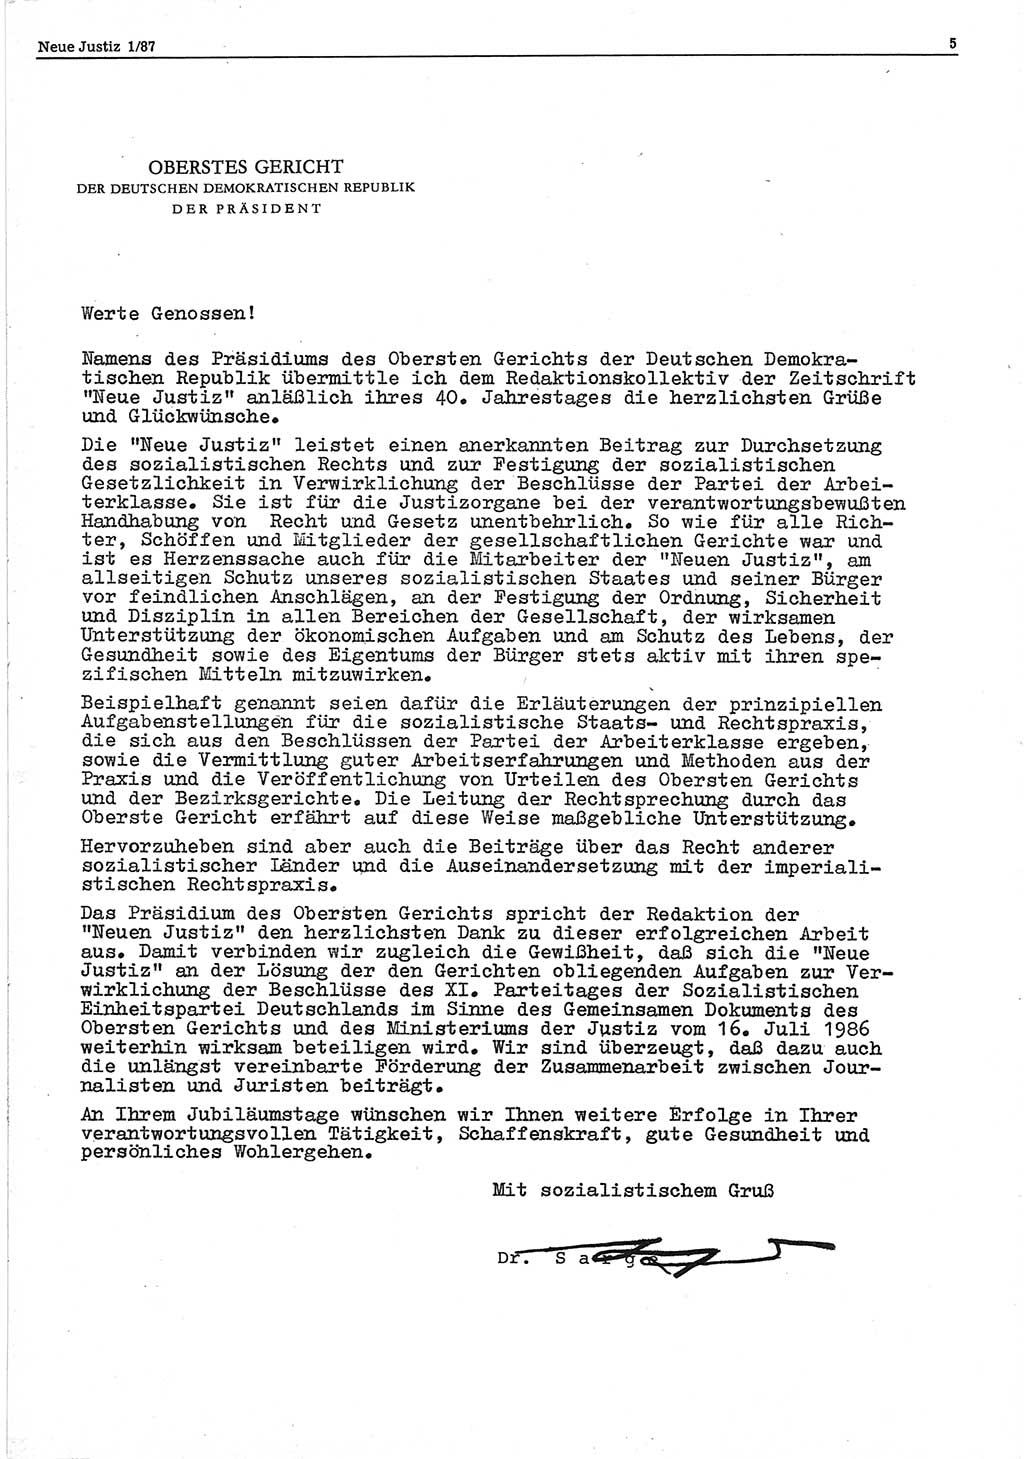 Neue Justiz (NJ), Zeitschrift für sozialistisches Recht und Gesetzlichkeit [Deutsche Demokratische Republik (DDR)], 41. Jahrgang 1987, Seite 5 (NJ DDR 1987, S. 5)